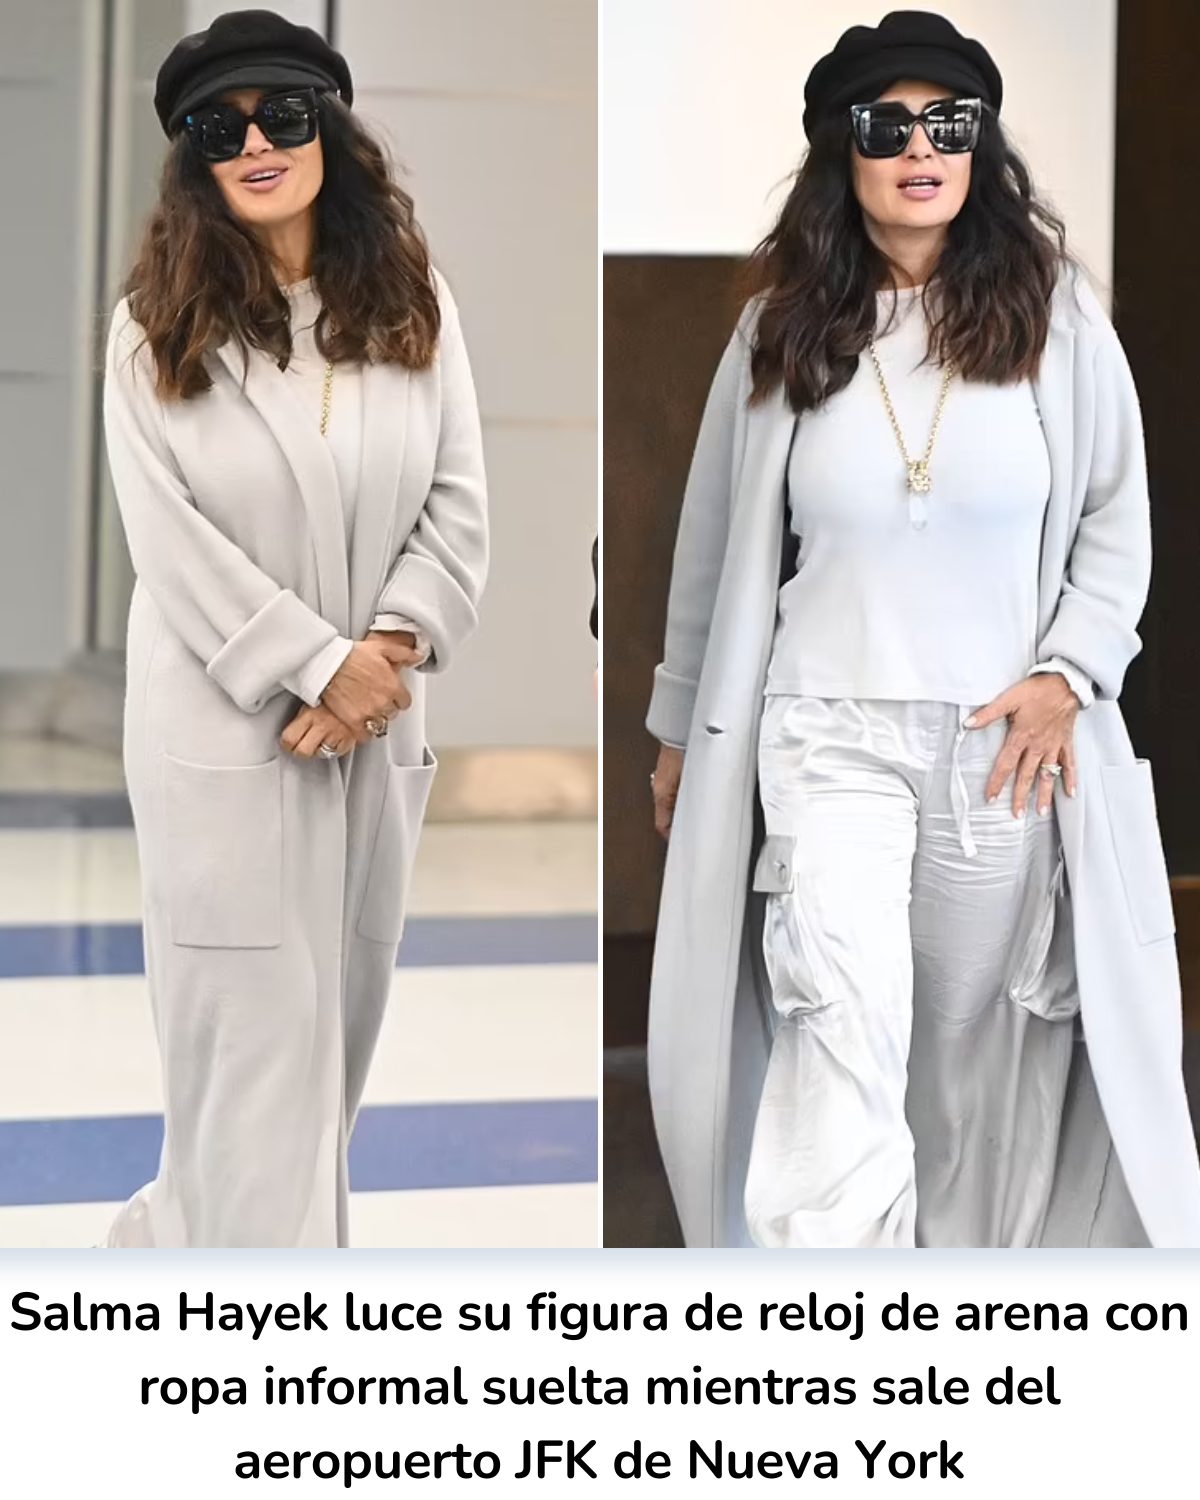 Cover Image for Salma Hayek luce su figura de reloj de arena con ropa informal suelta mientras sale del aeropuerto JFK de Nueva York